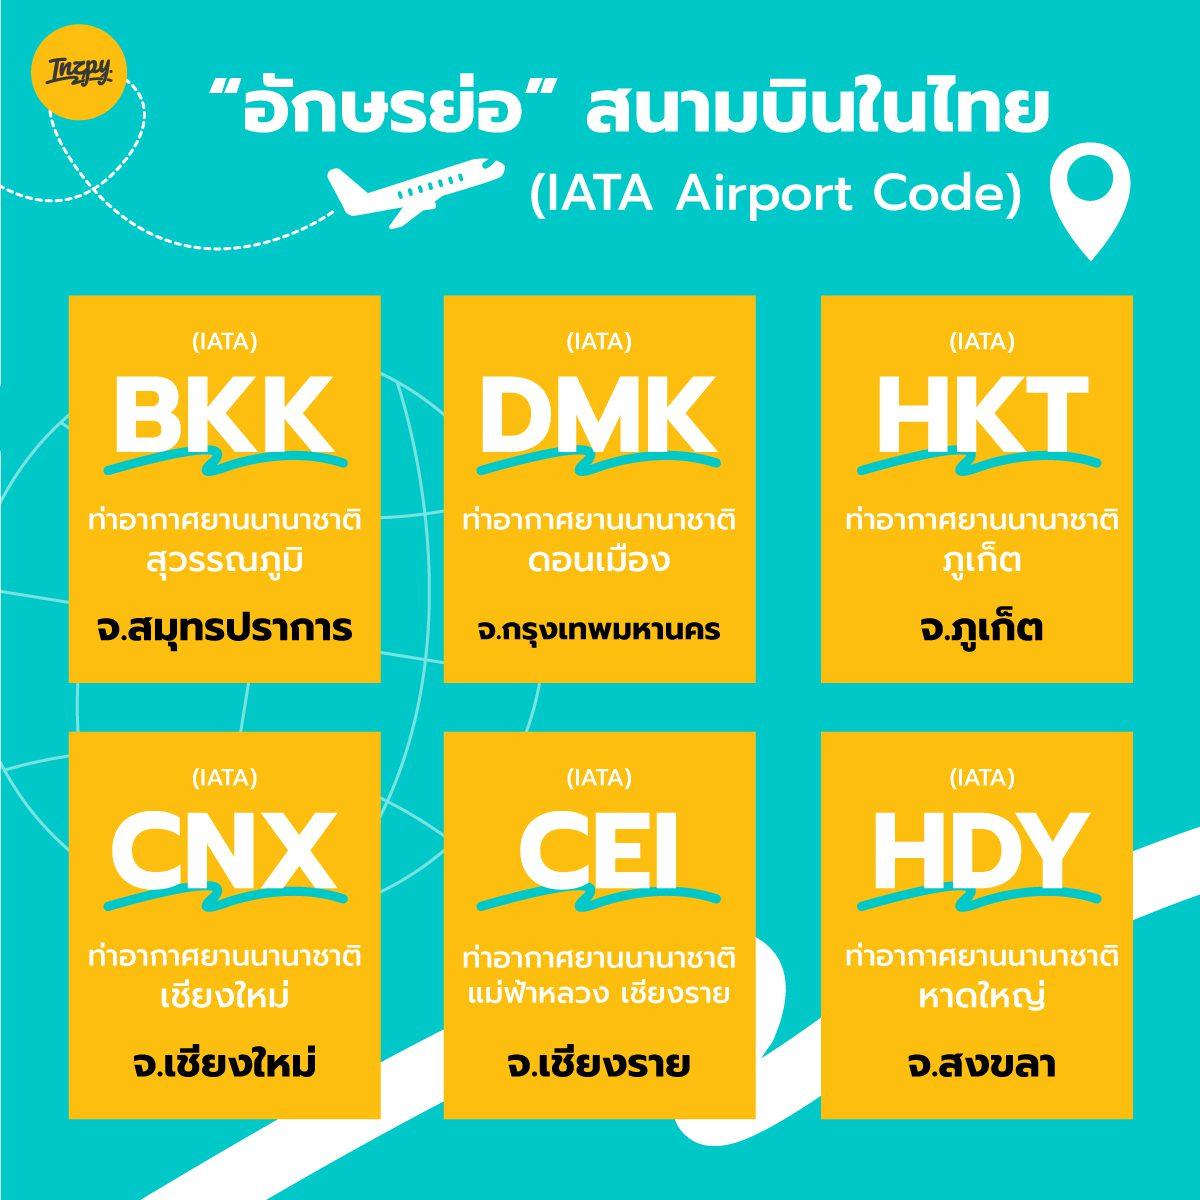 อักษรย่อ สนามบินในไทย ที่อยู่ใน ตั๋วเครื่องบิน (IATA Airport Code)